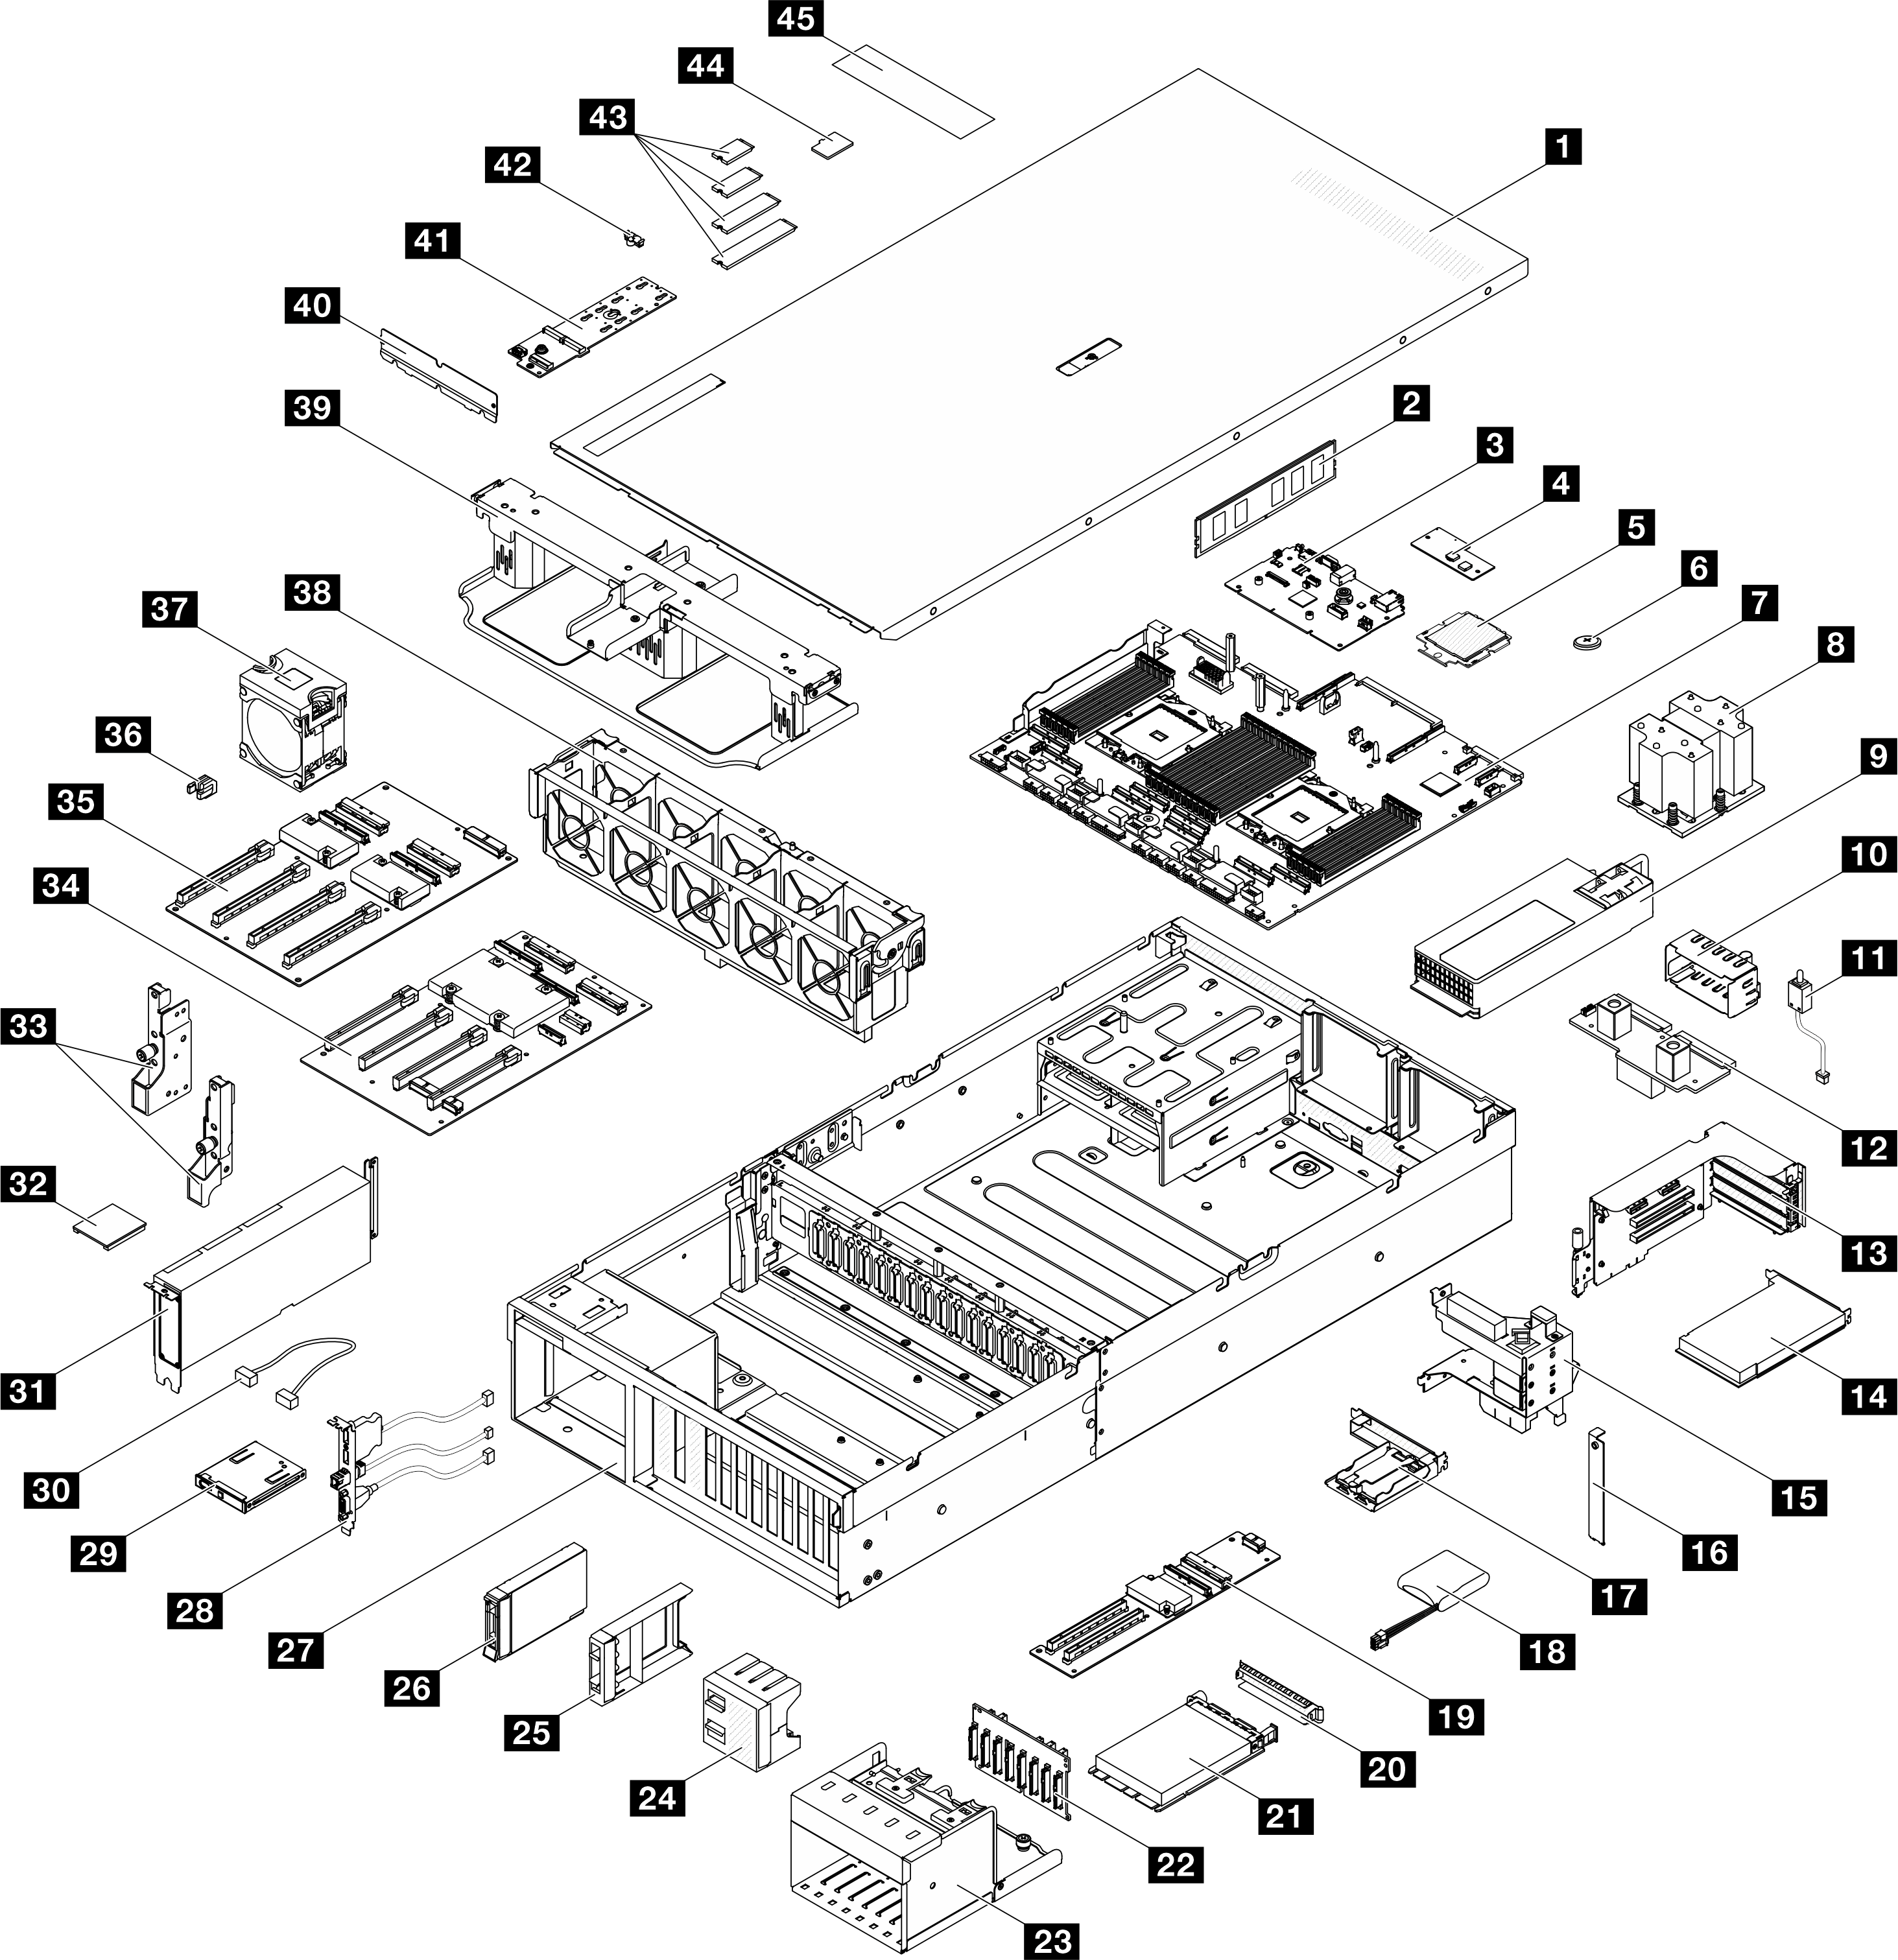 Server components of the 4-DW GPU モデル